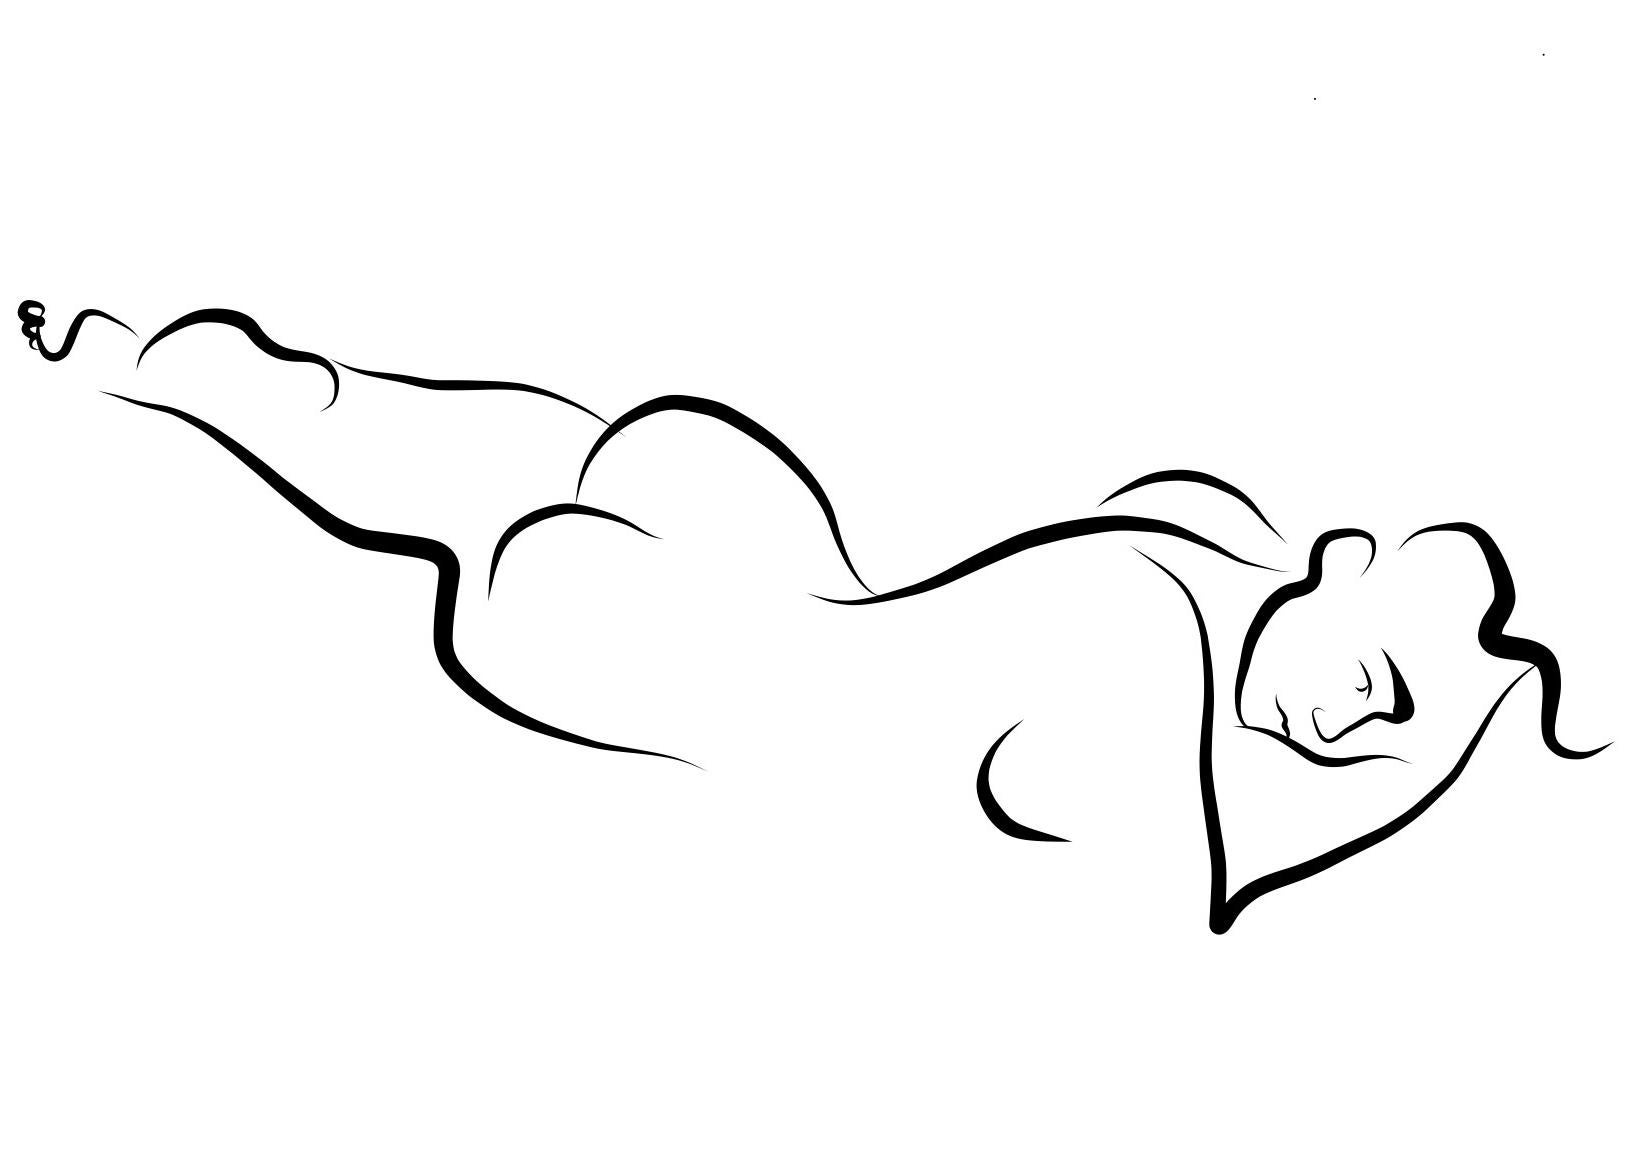 Haiku #1, 1/50 - Digital Vector Drawing Reclining Female Nude Woman Figure